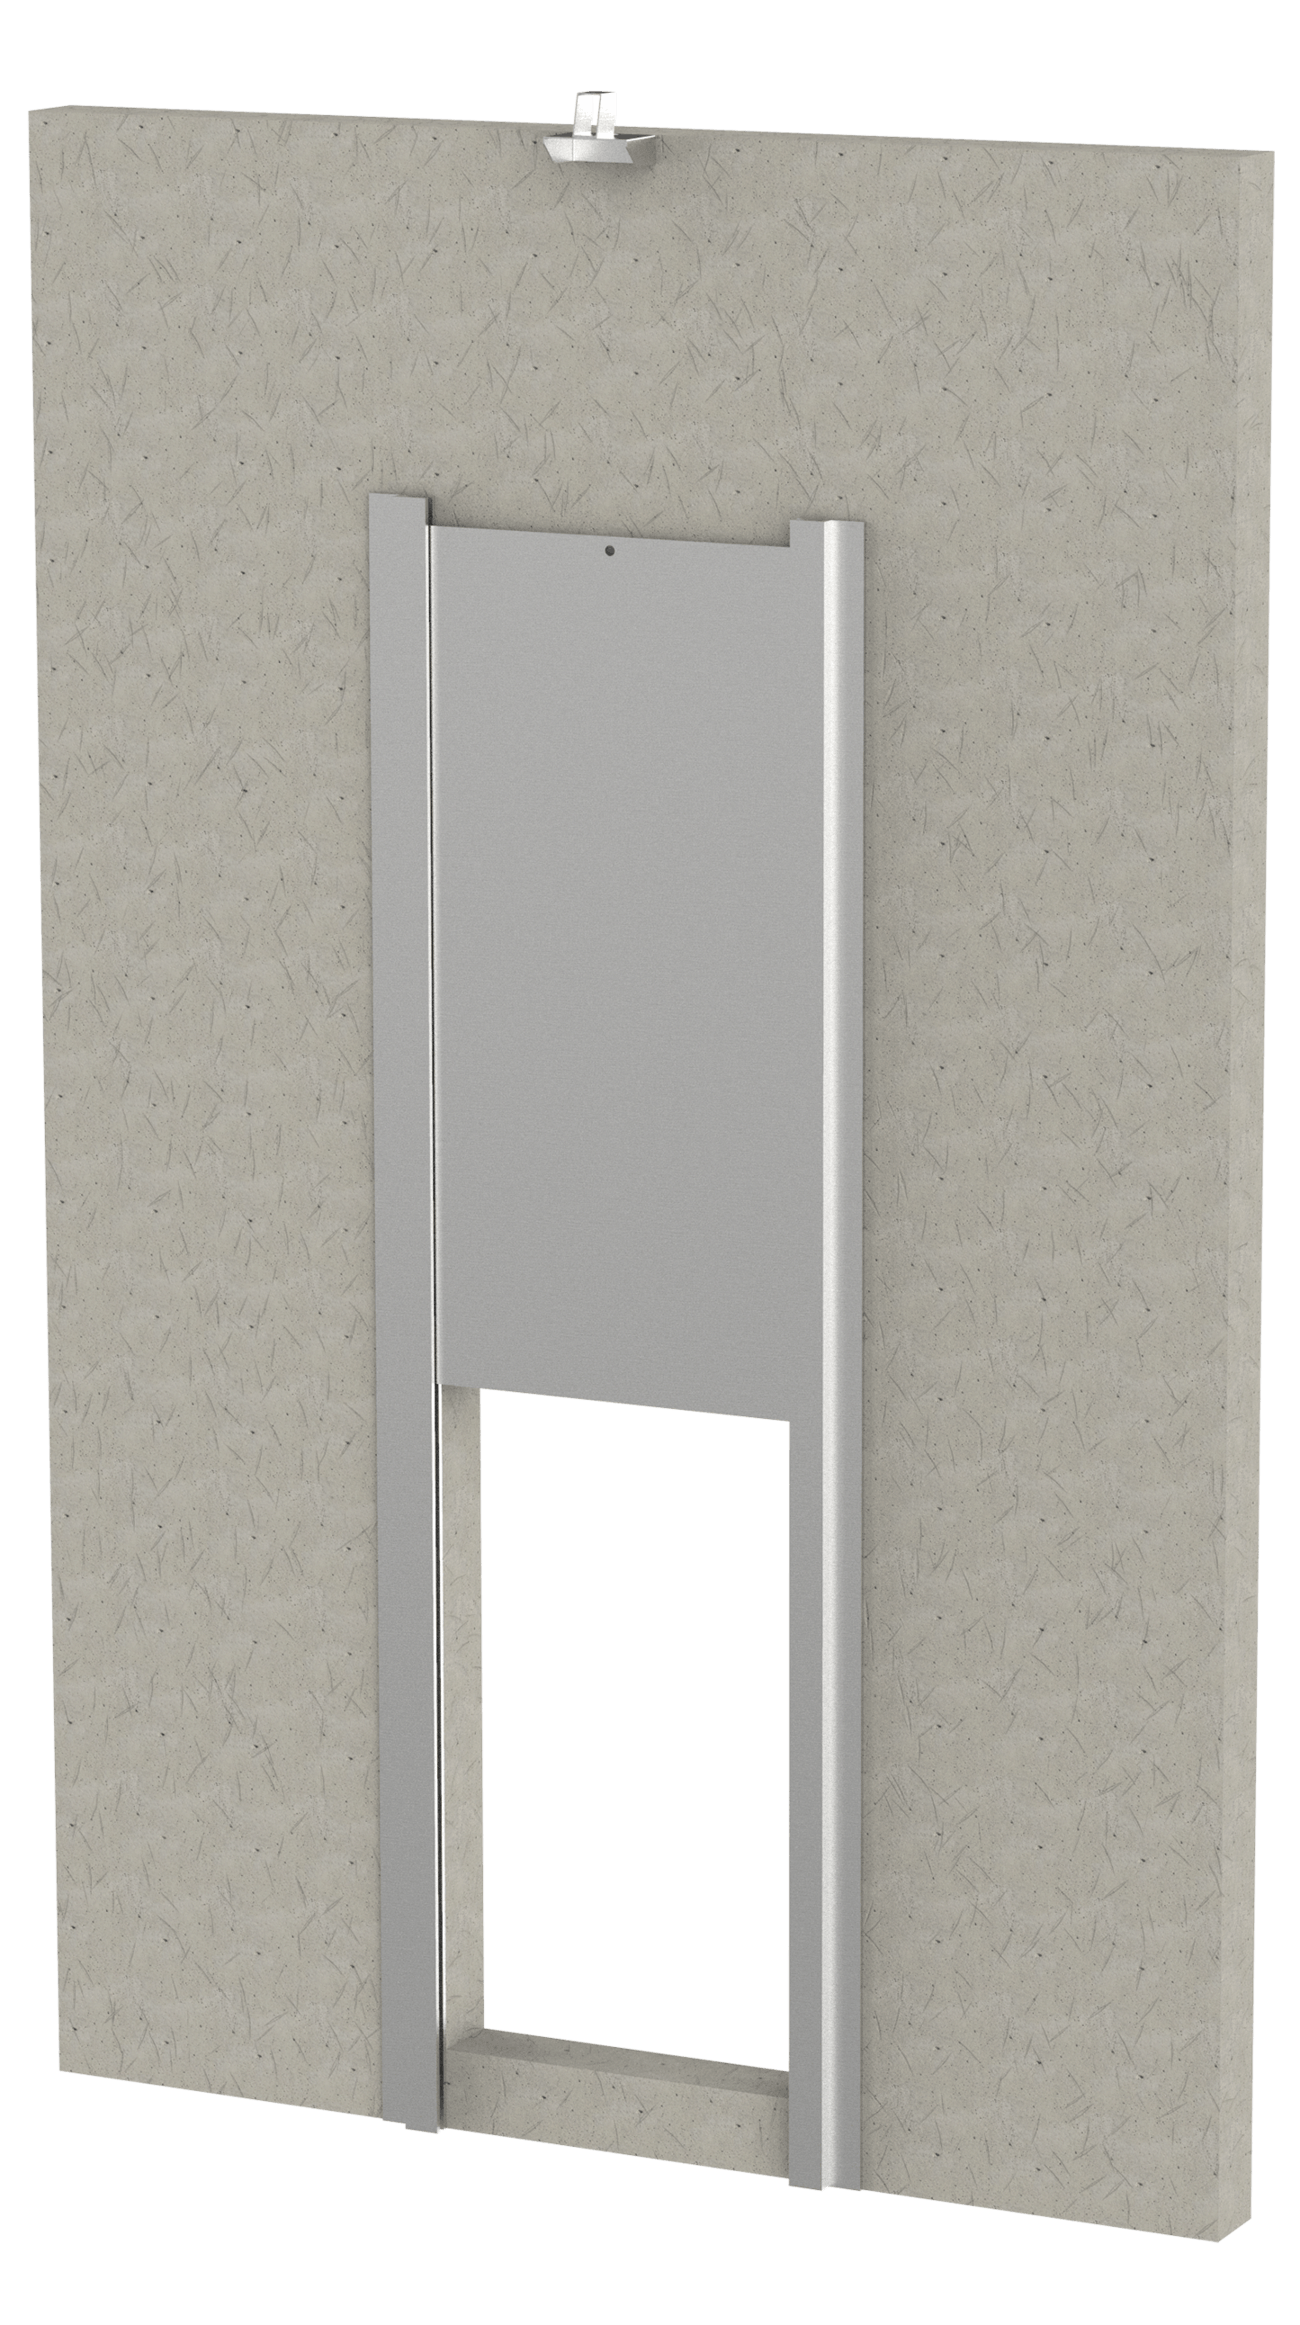 Transfer Door with Carabiner on Block Wall